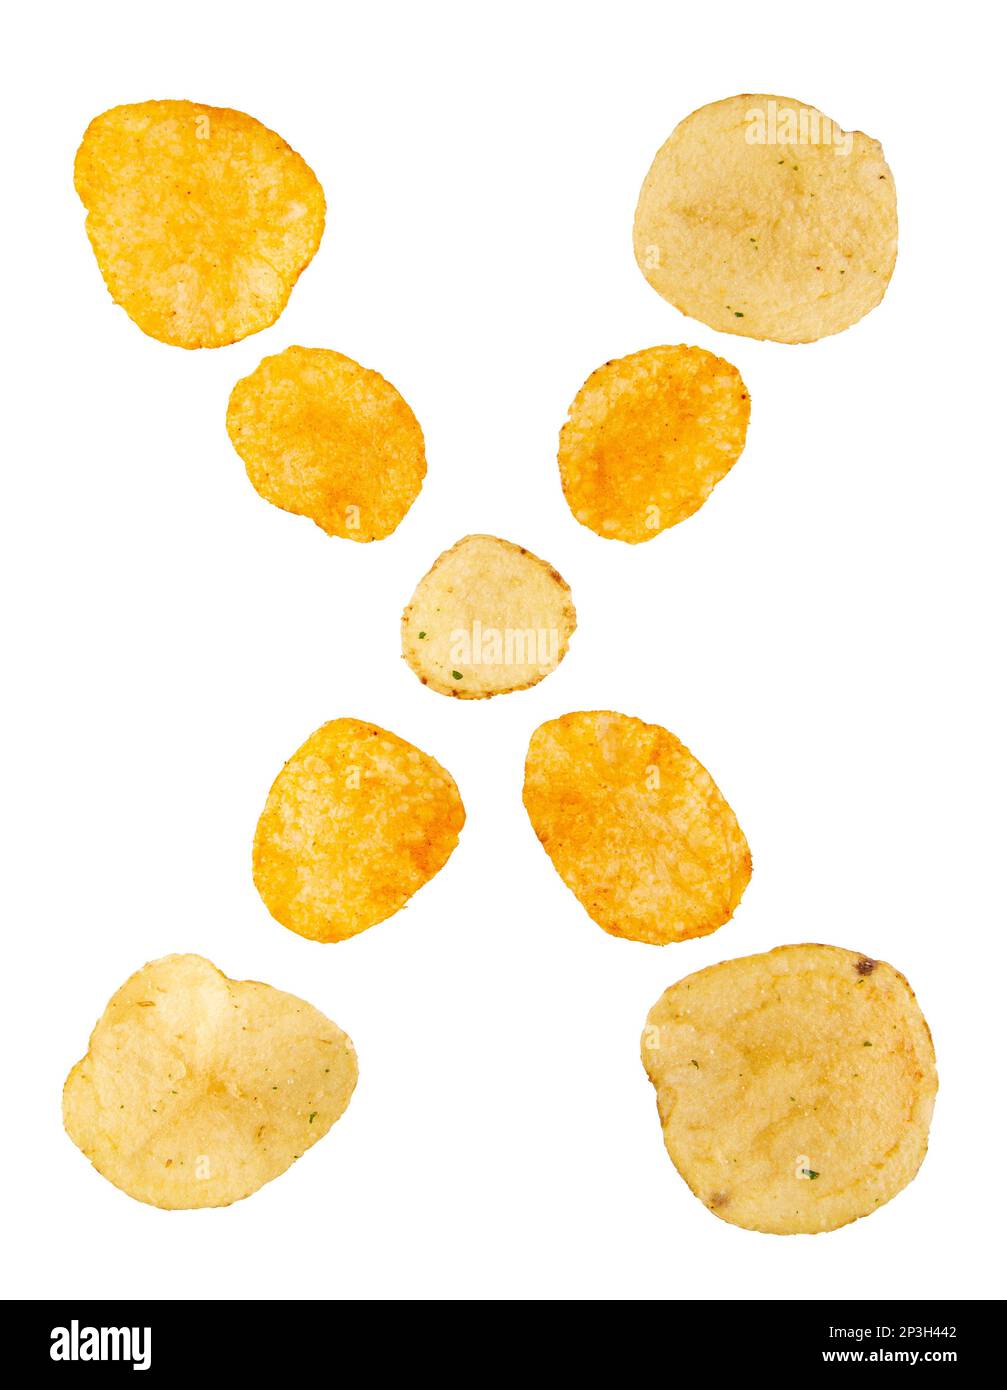 Lettre X faite de chips de pomme de terre et isolée sur fond blanc. Concept de l'alphabet alimentaire. Une lettre de l'ensemble de police de puce de pomme de terre facile à empiler. Banque D'Images